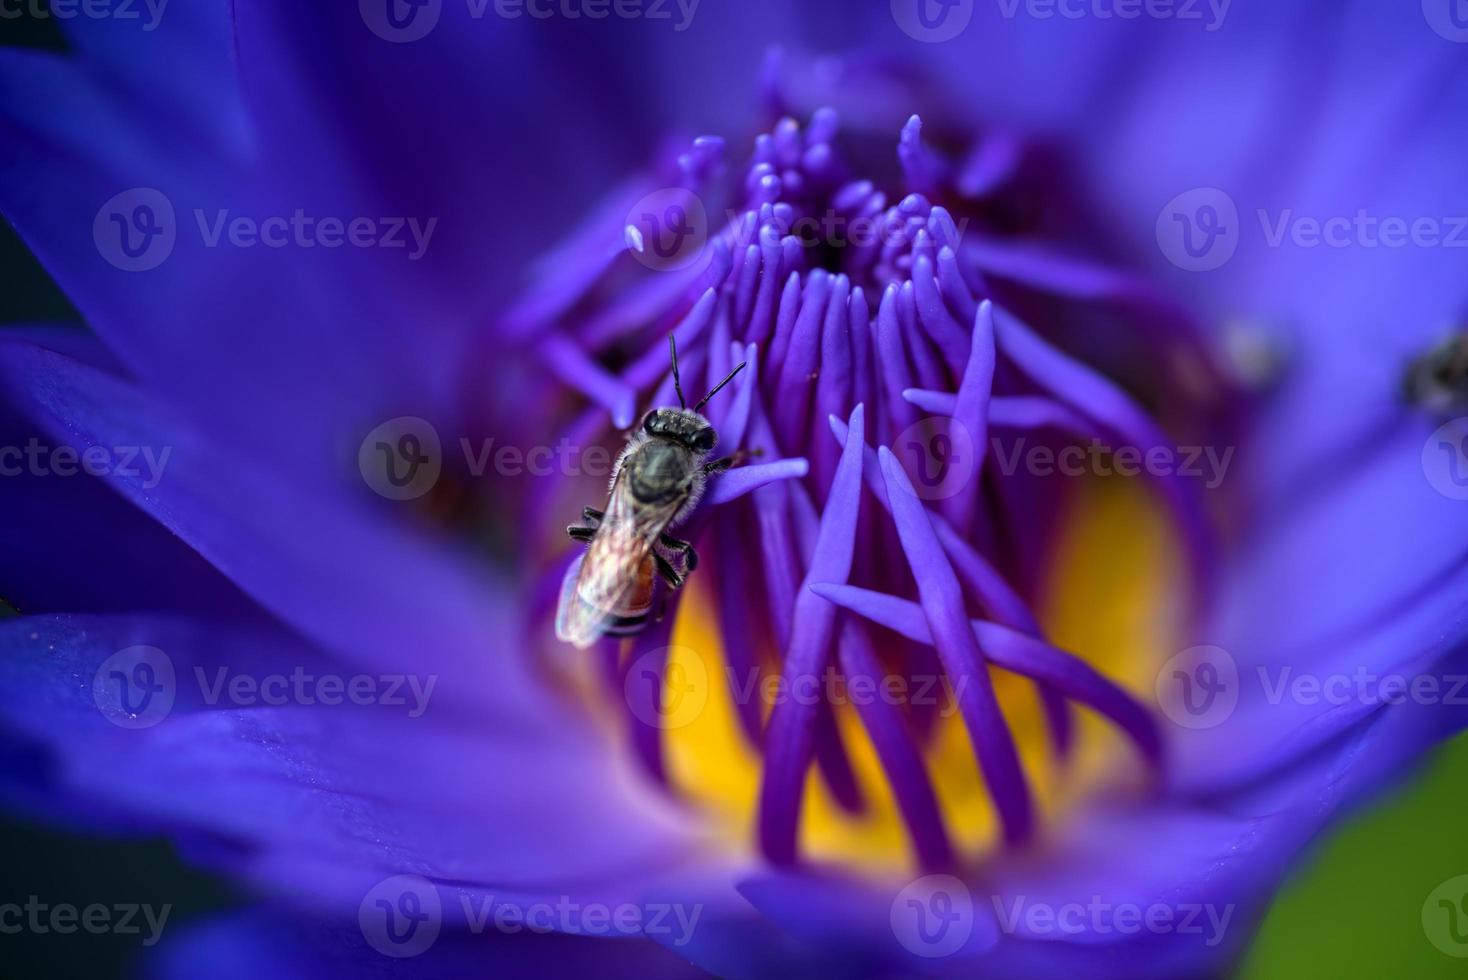 bijen halen nectar uit de prachtige paarse waterlelie of lotusbloem. macro foto van bij en de bloem.